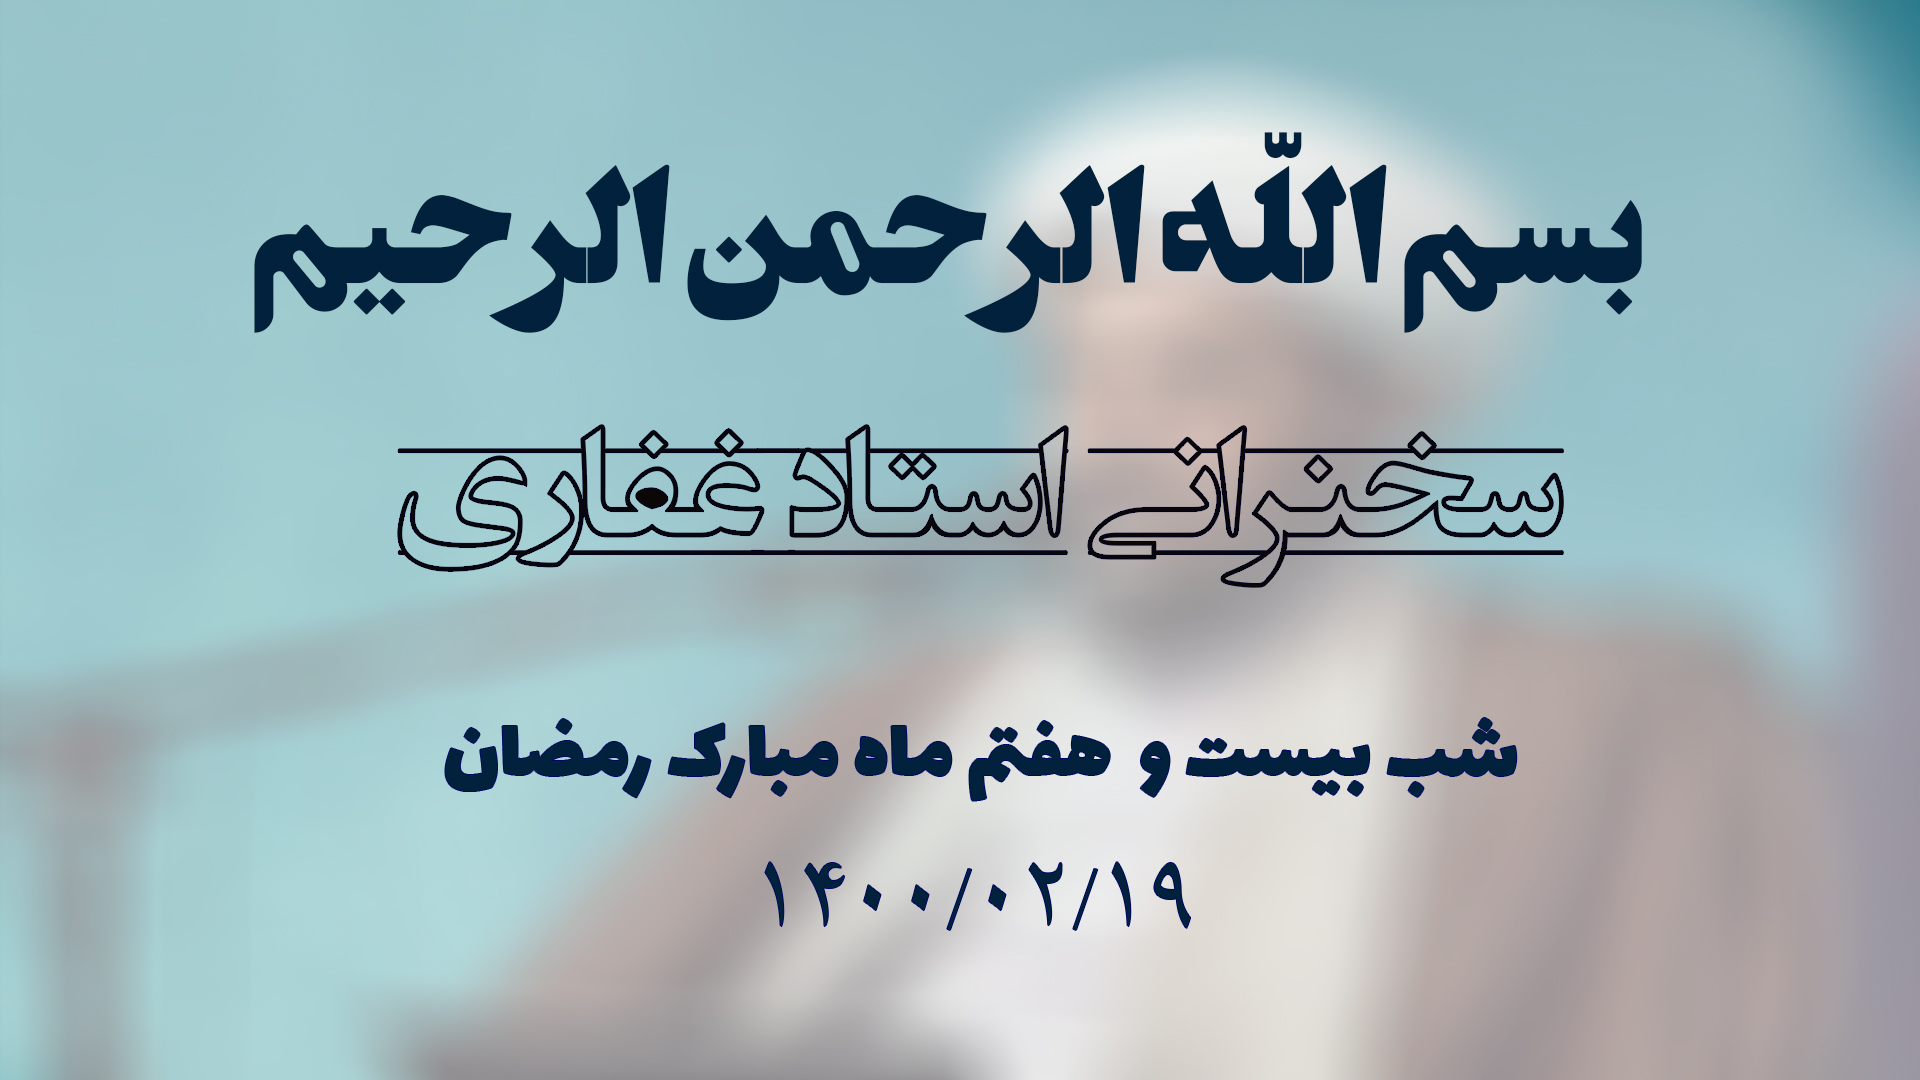 سخنرانی استاد غفاری ، شب بیست و هفتم ماه مبارک رمضان ۱۴۰۰/۰۲/۱9